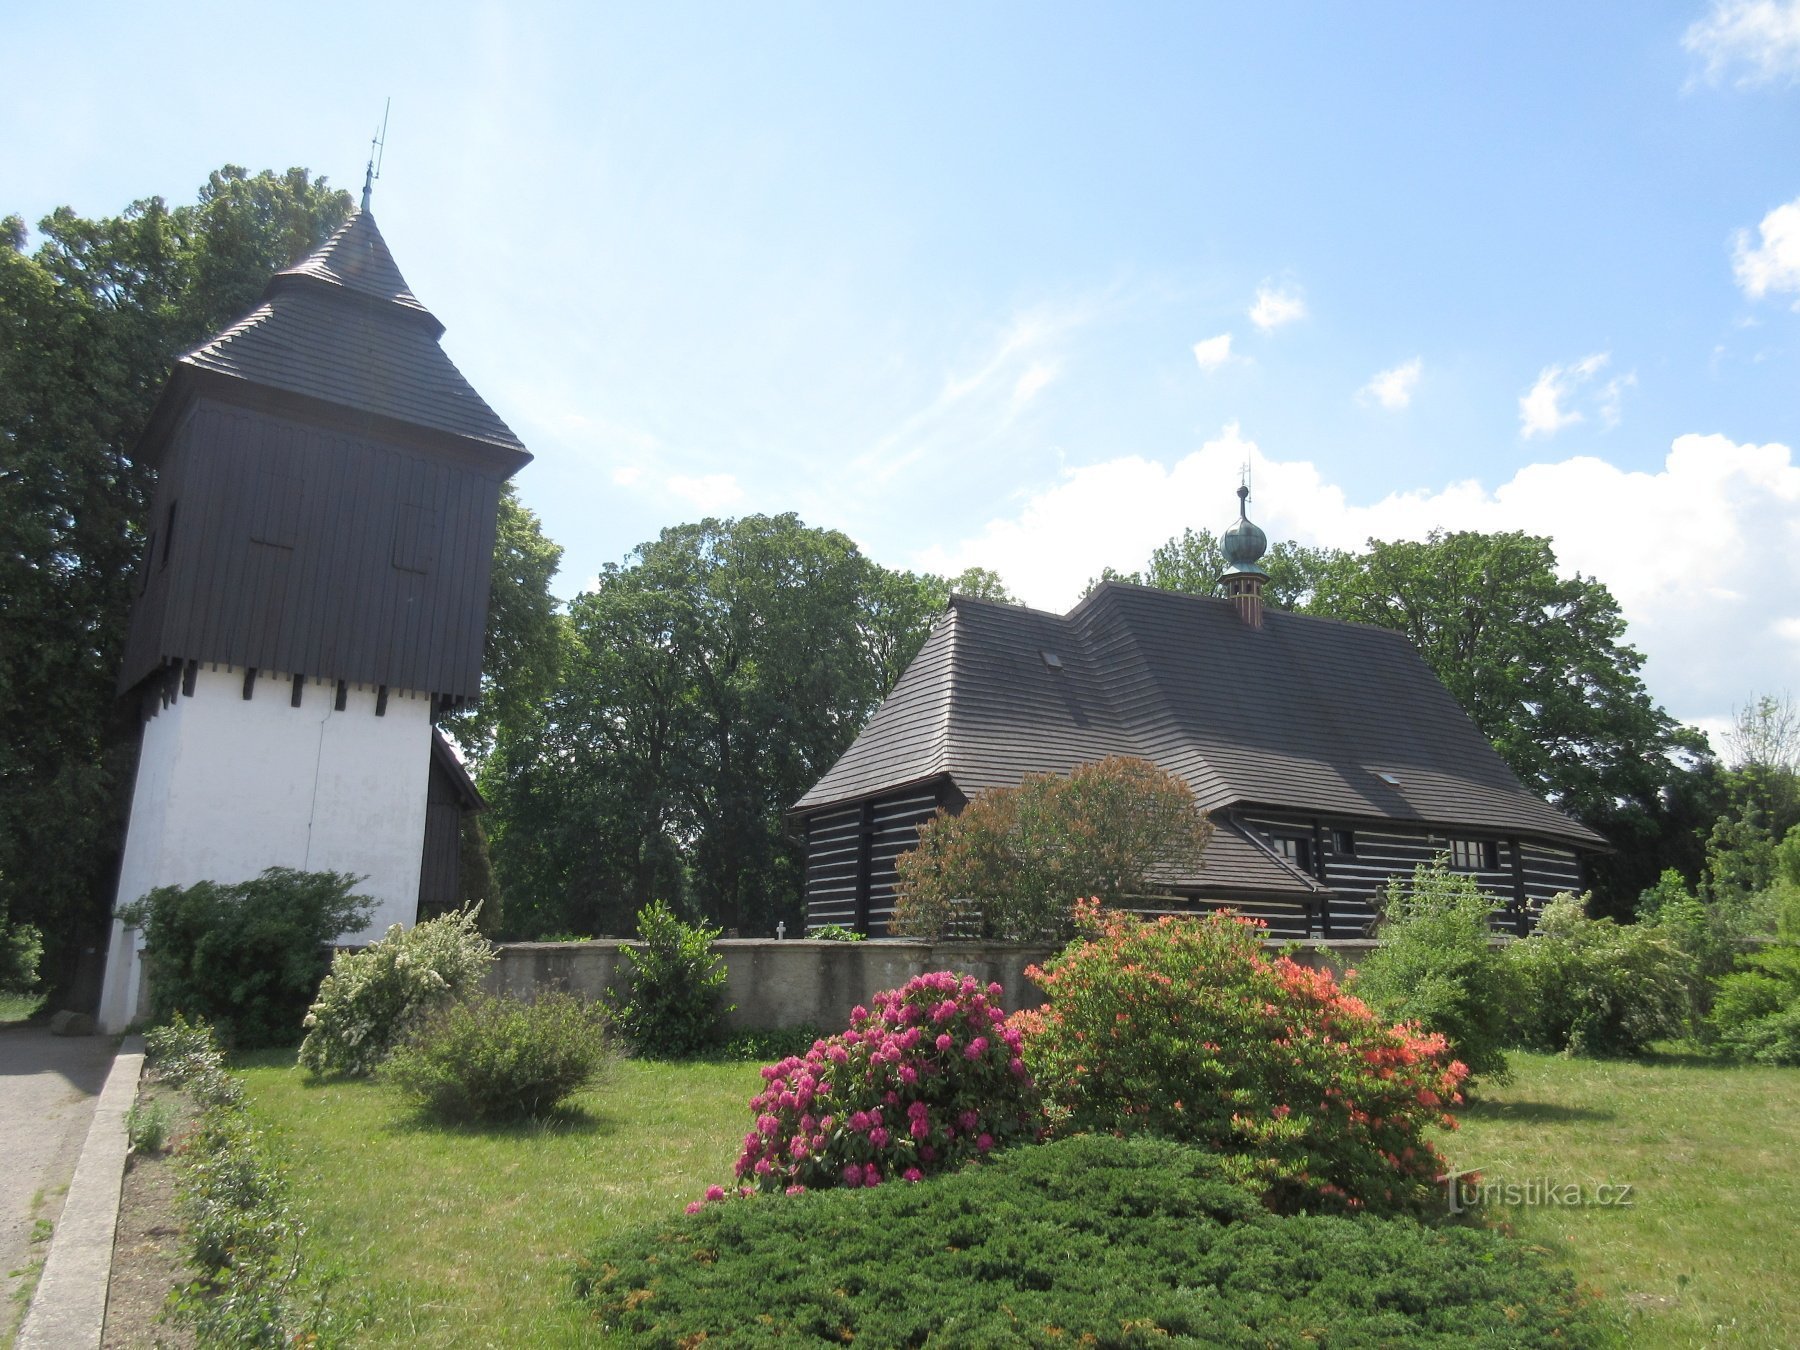 Slavoňov - nhà thờ gỗ St. John the Baptist với tháp chuông